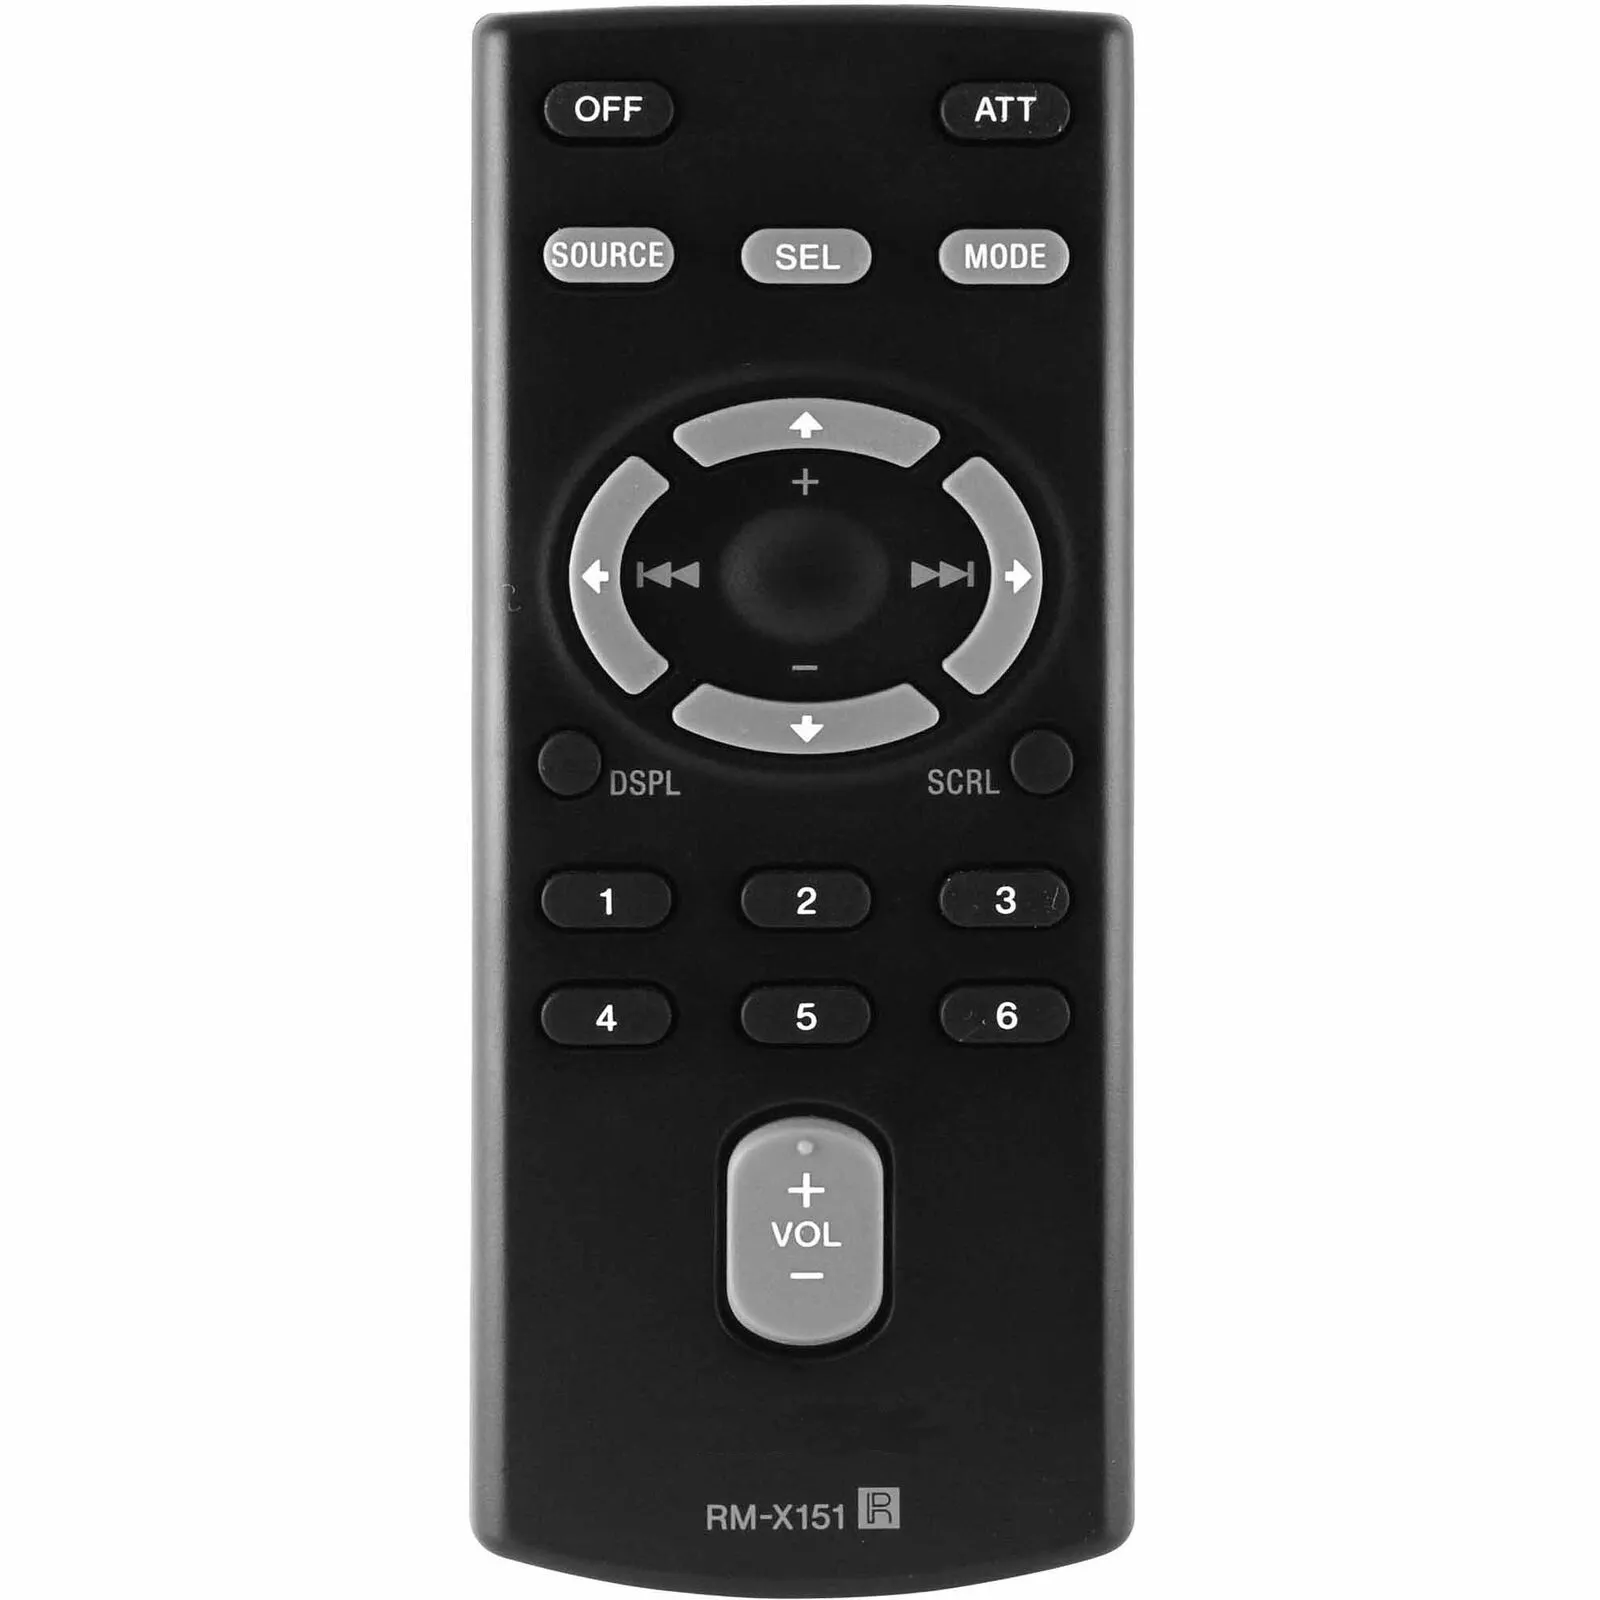 New Original RM-X151 Remote Control For Sony Car Stereo CDX-GT340 CDX-GT240 CDX-GT33W CDX-GT34W